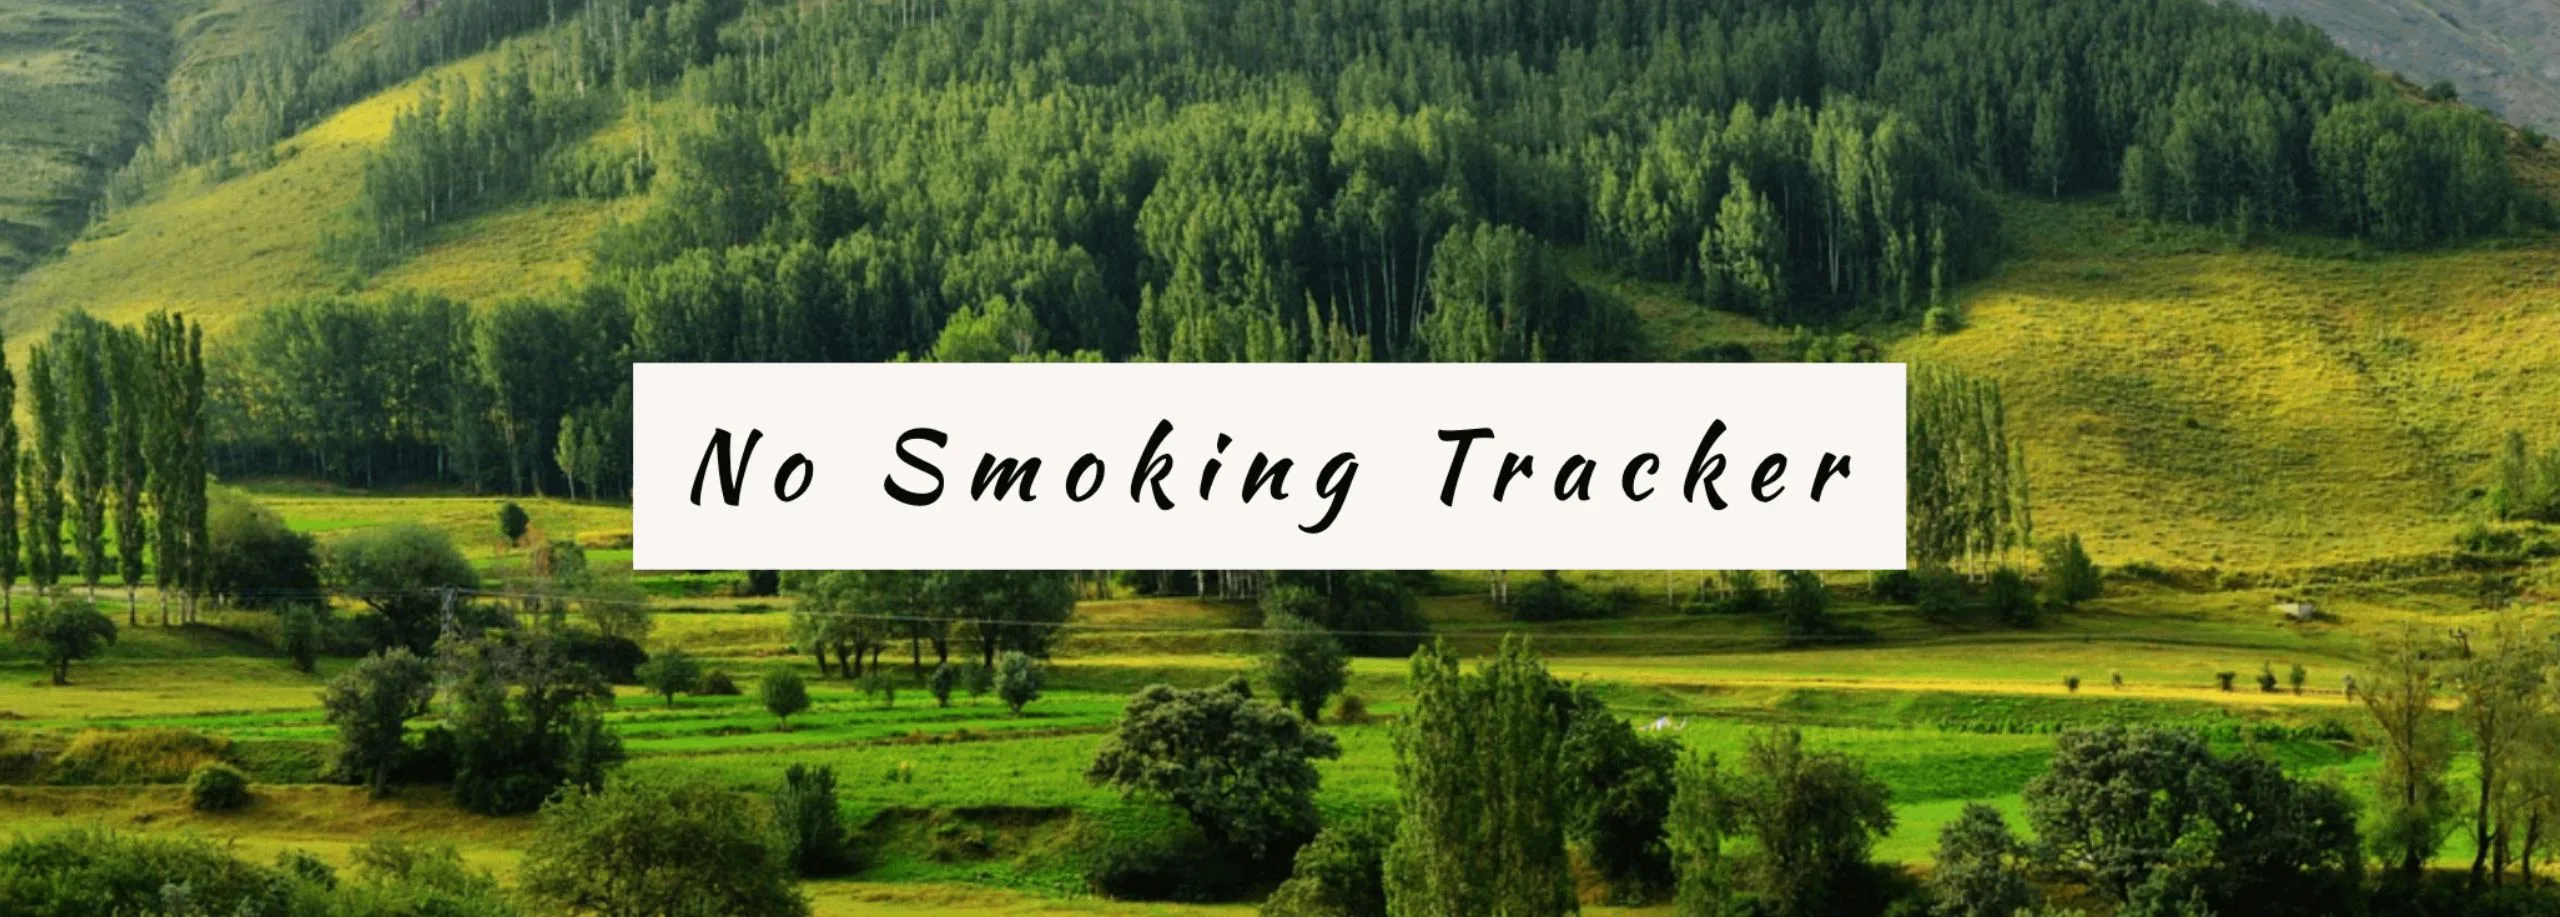 no smoking tracker